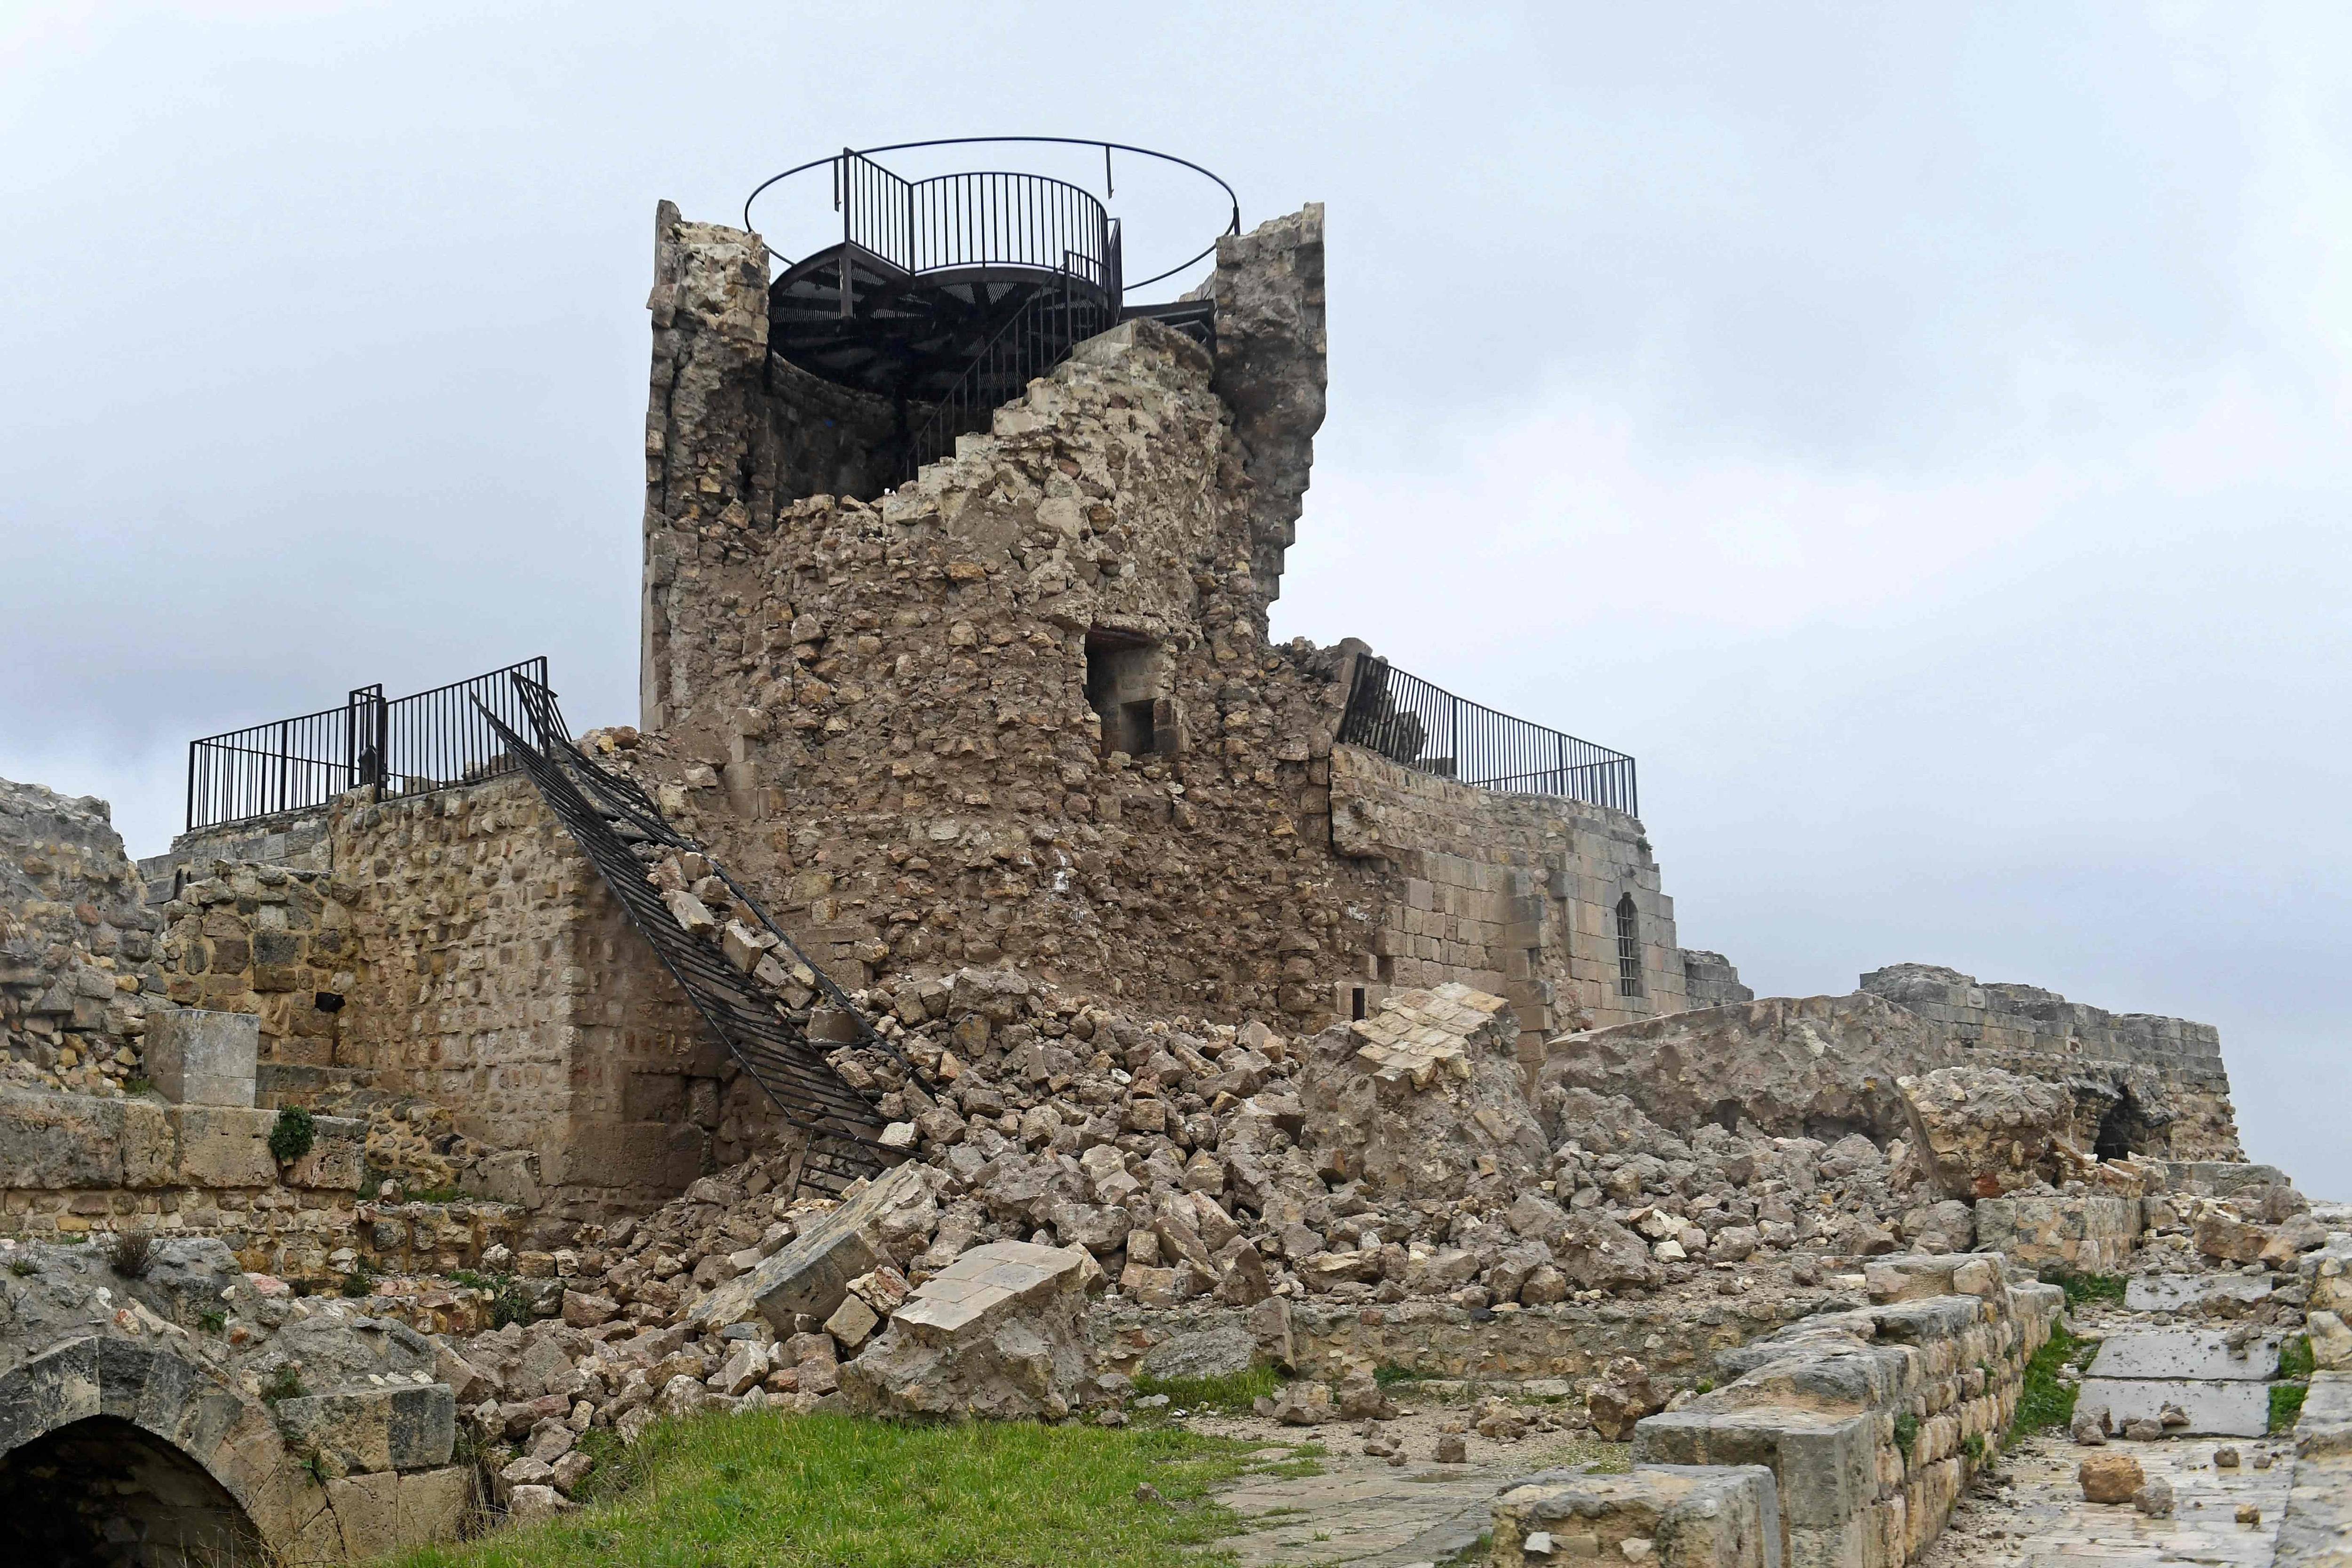 摧毁城堡
:强震损毁诸多古迹，首要任务是防止进一步破坏